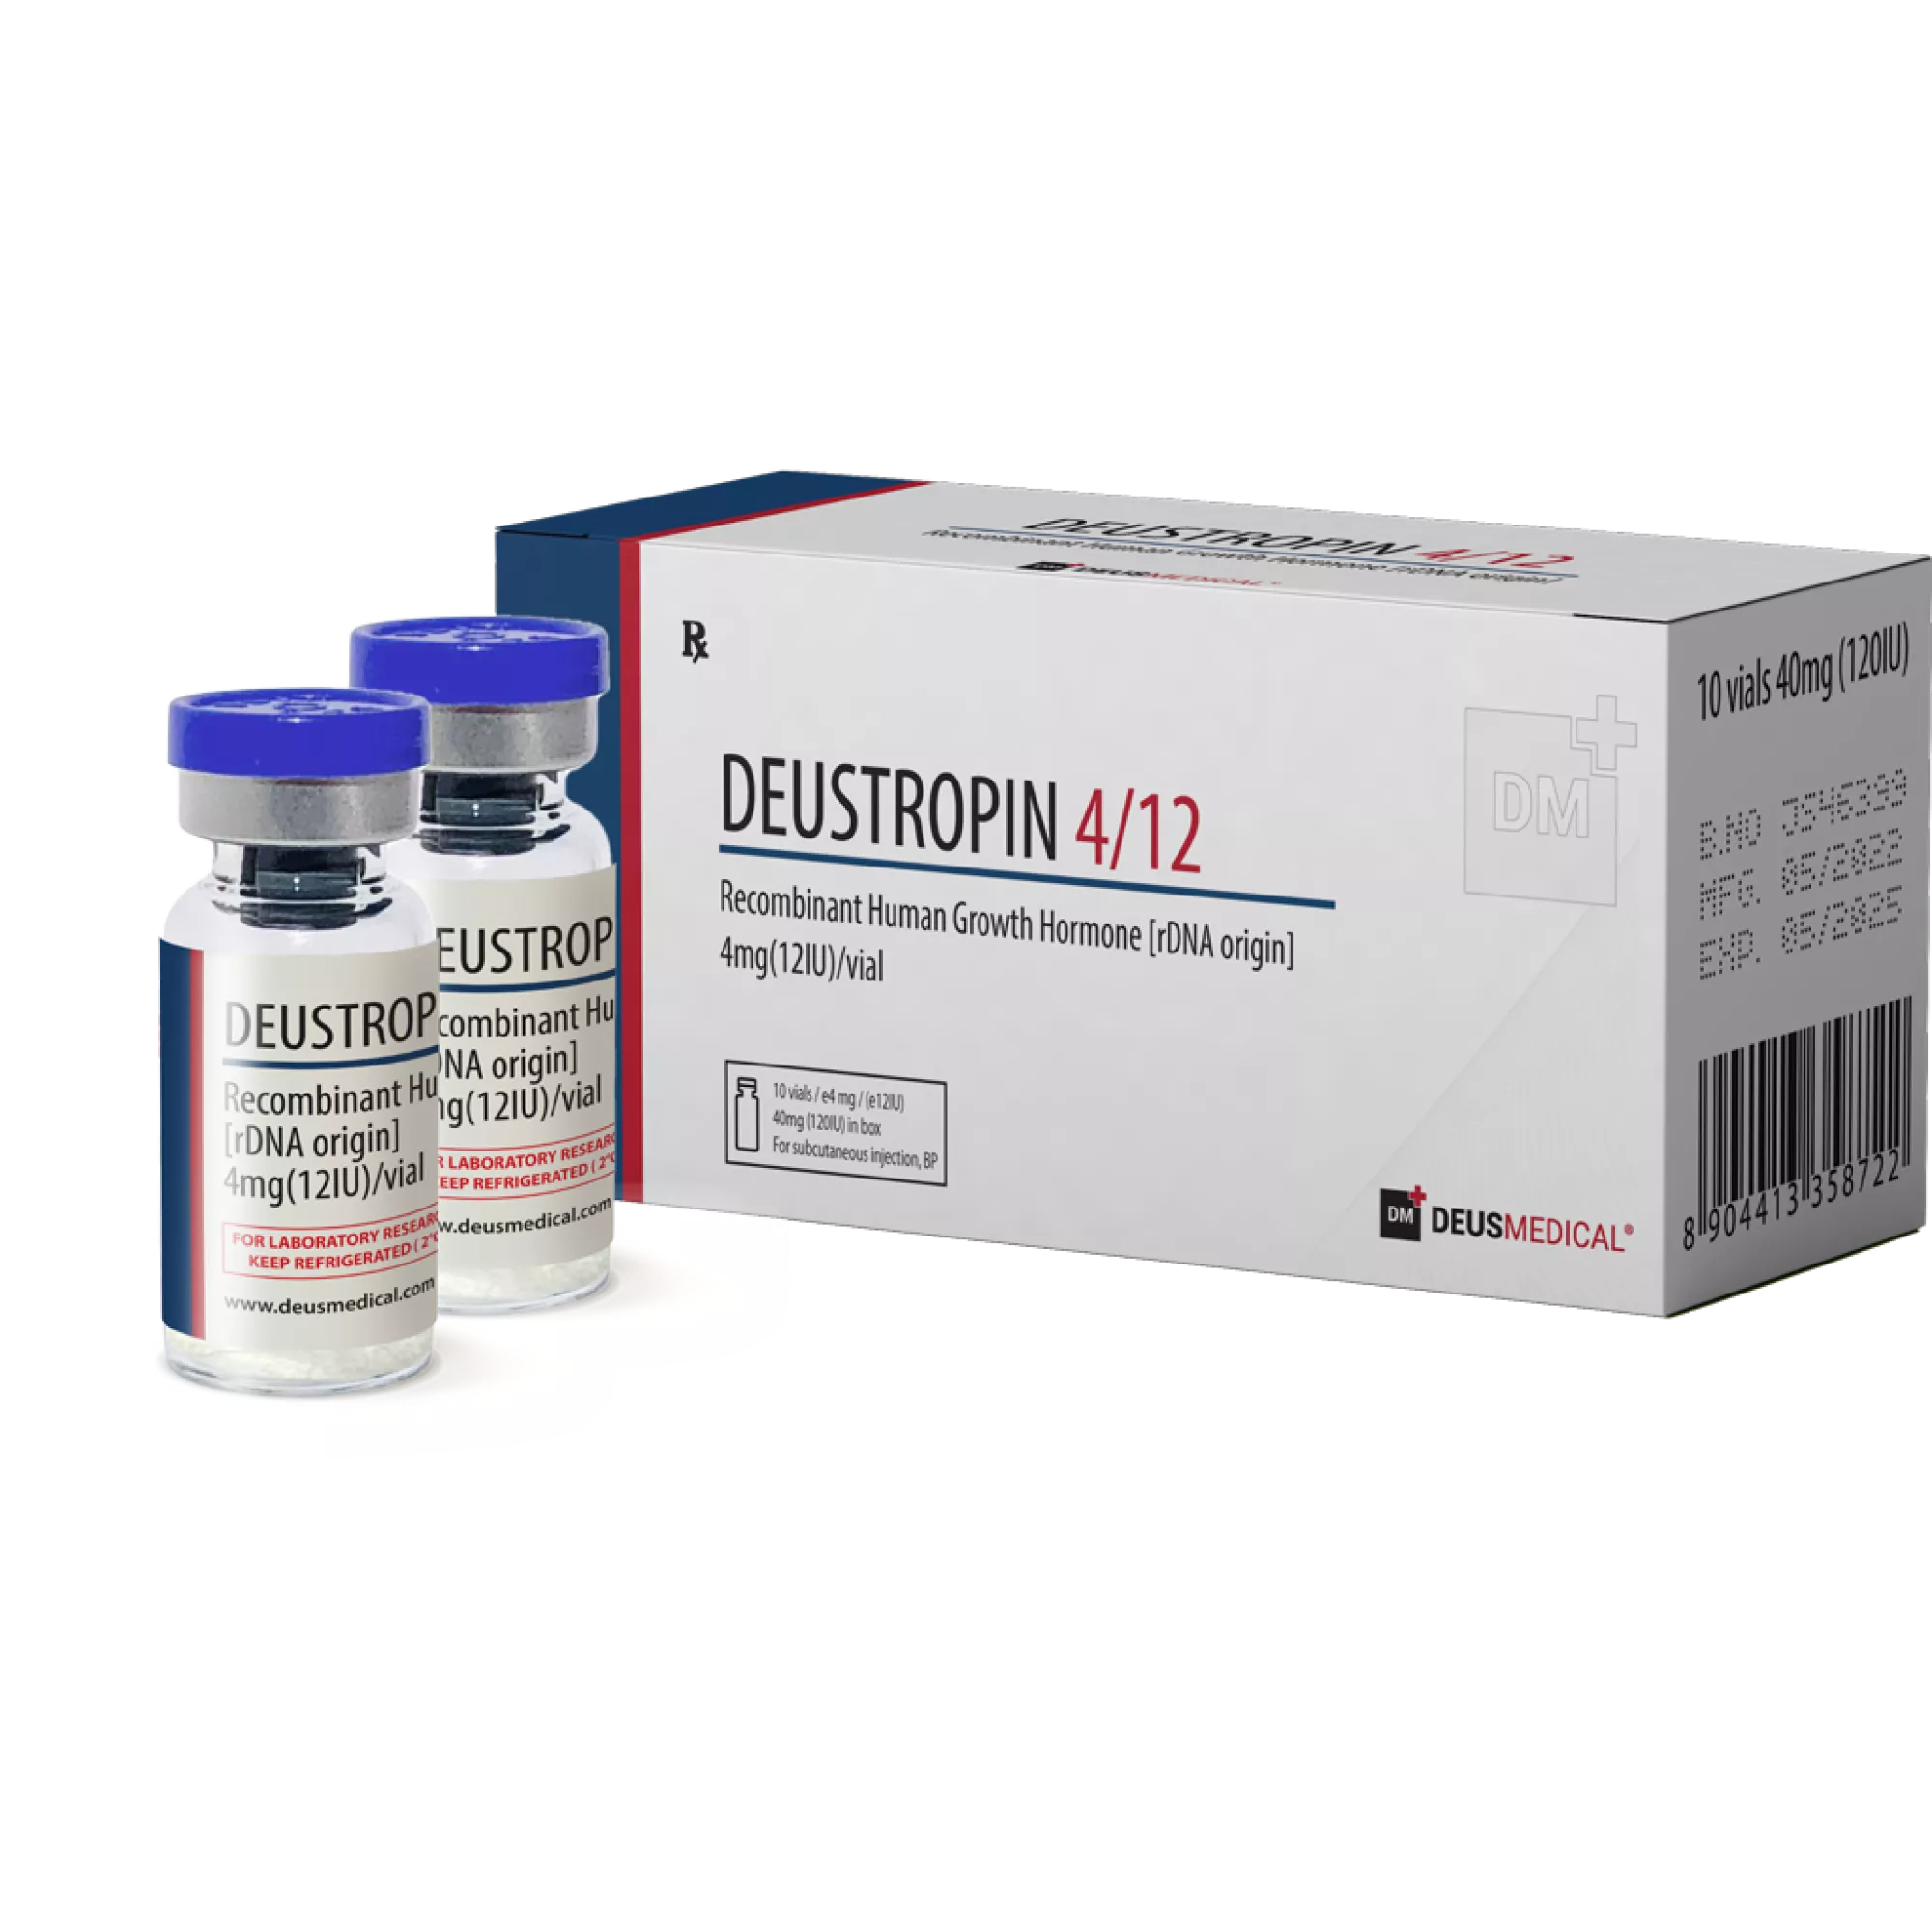 DEUSTROPIN 4/12 (Recombinant Human Growth Hormone [rDNA origin]), Deus Medical, Buy Steroids Online - www.deuspower.shop